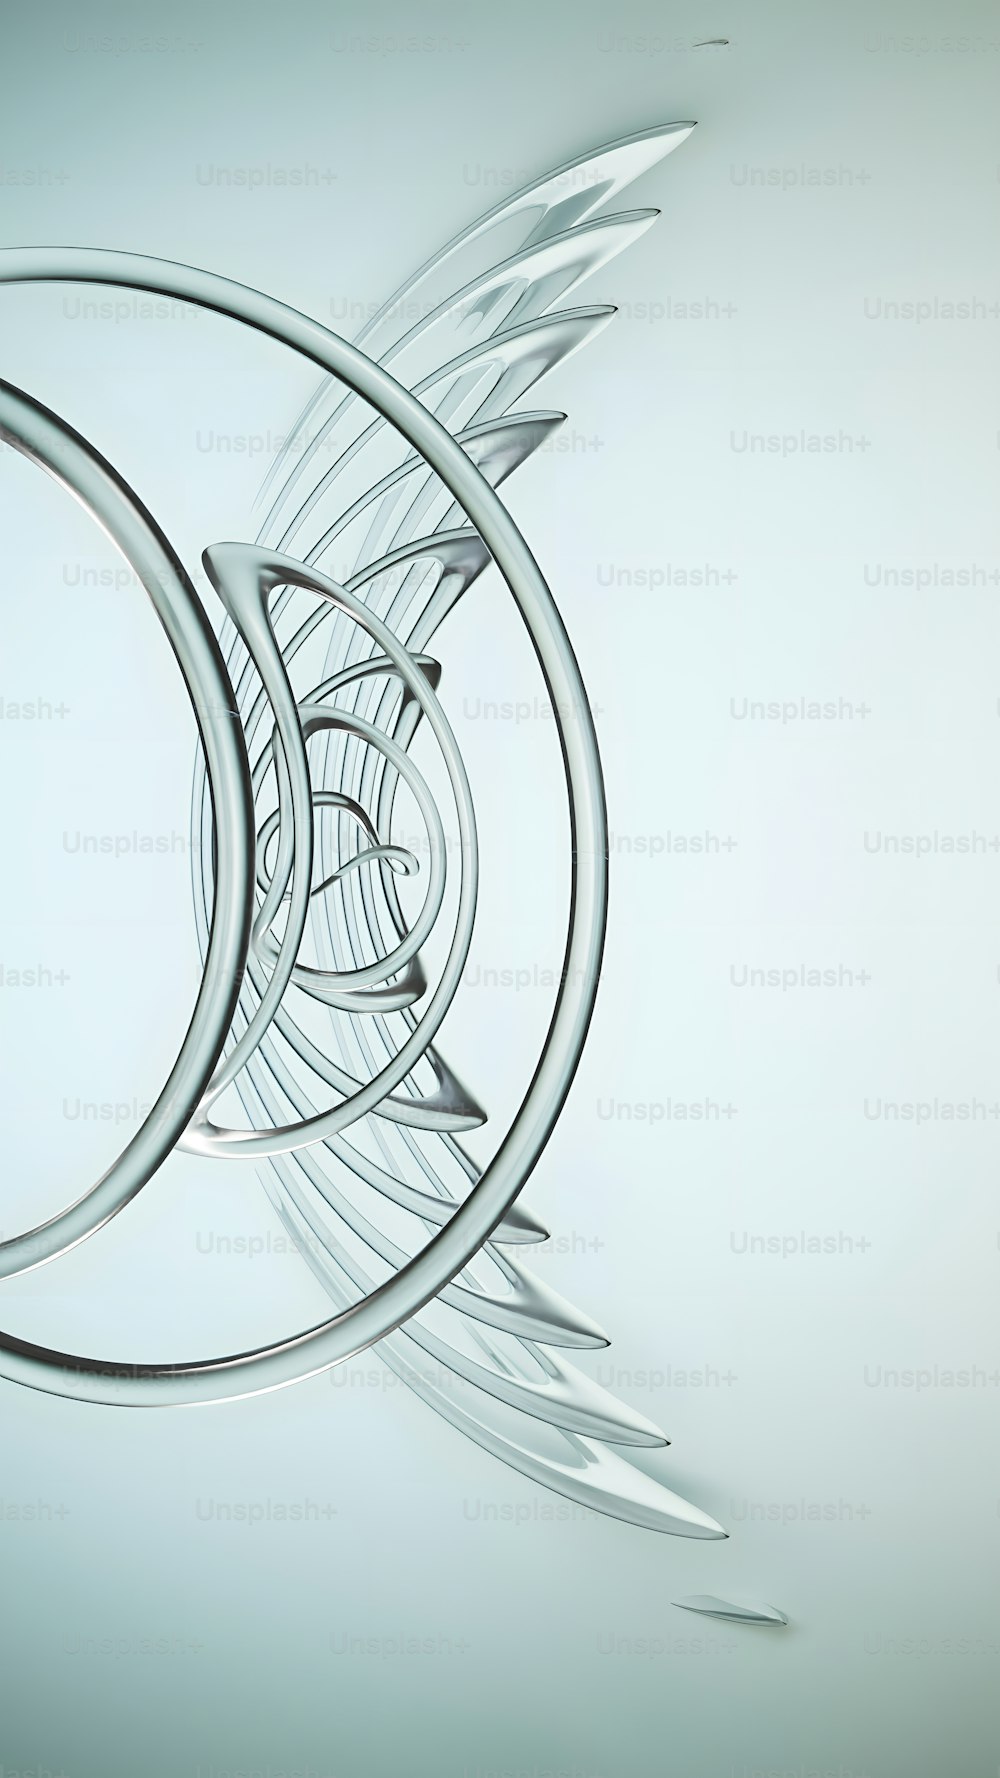 Una imagen abstracta de un objeto circular con alas